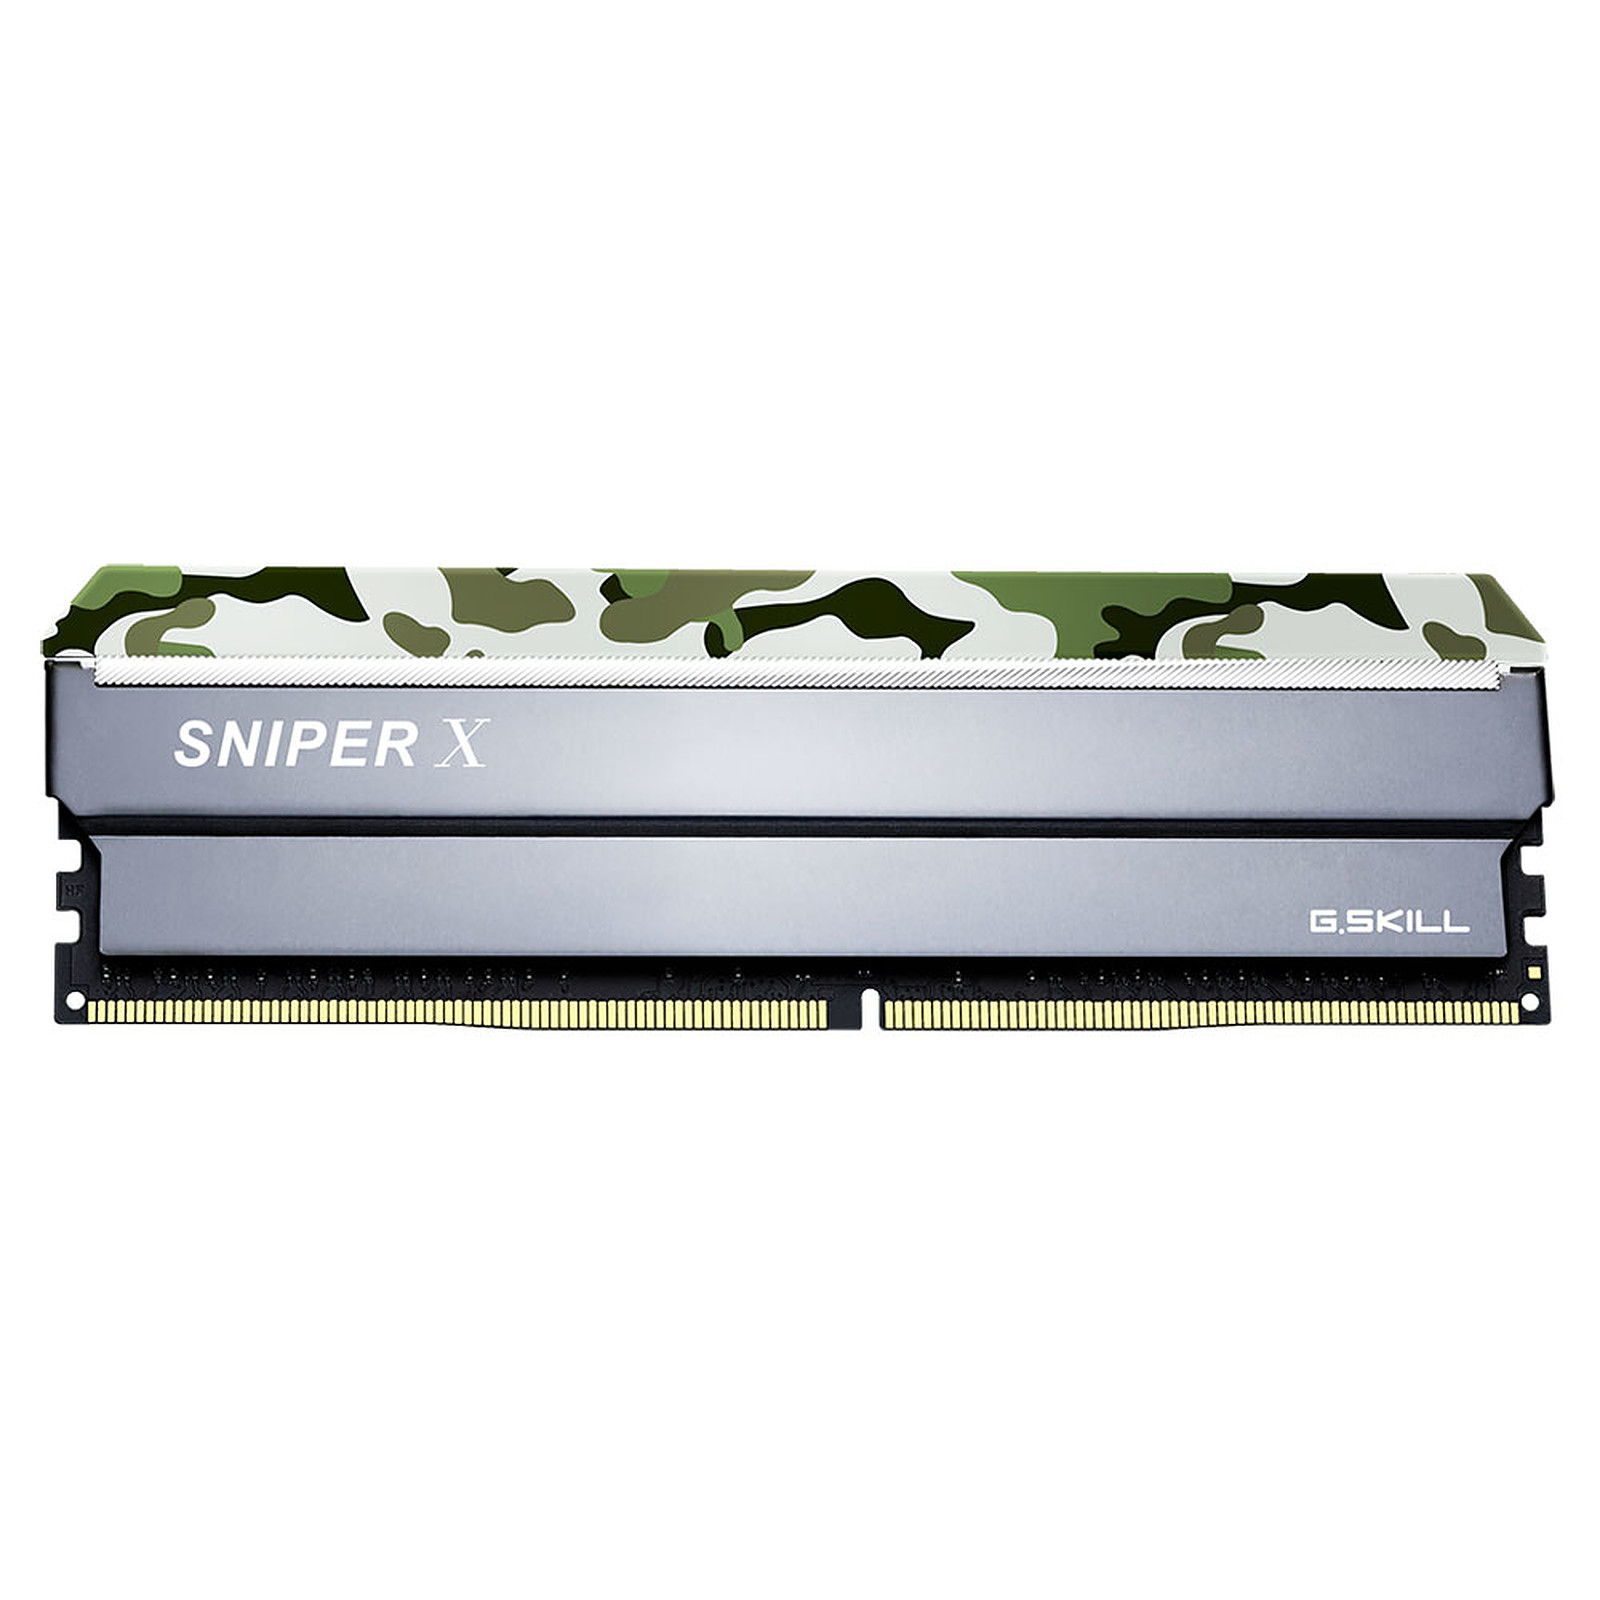 GSkill SniperX DDR4: 32GB di RAM ultra-veloci ad un prezzo FOLLE su Amazon